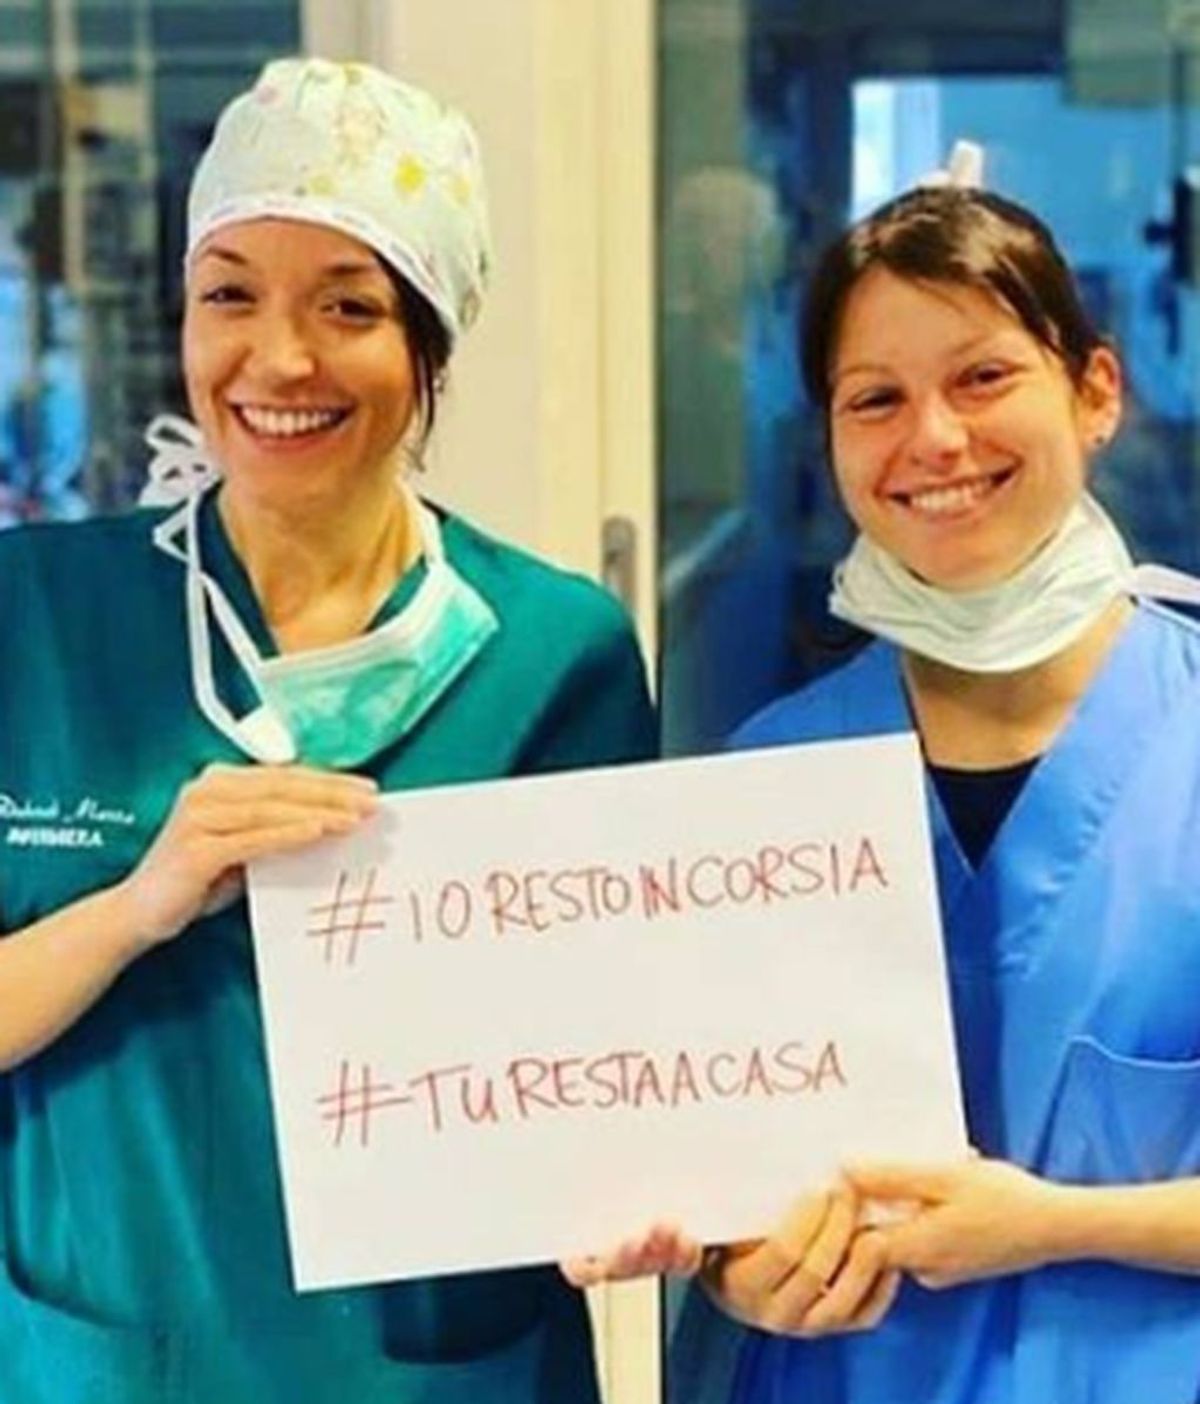 Las enfermeras italianas agotadas lanzan una llamada de socorro: “Haced vuestra parte y quedaros en casa”